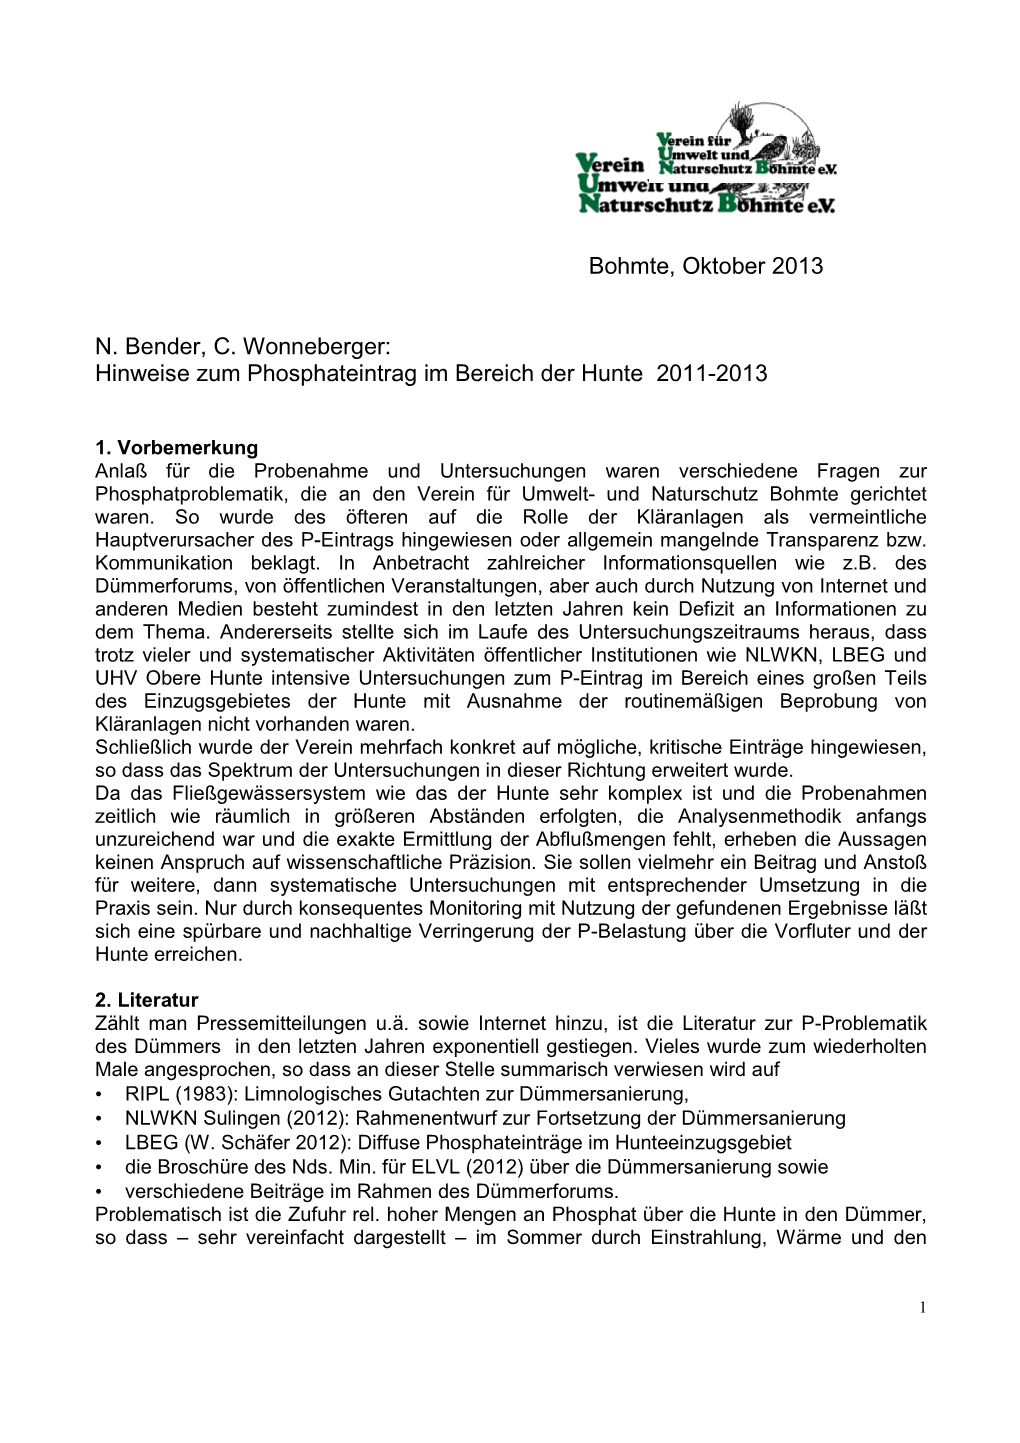 Hinweise Zum Phosphateintrag Im Bereich Hunte 2011-2013